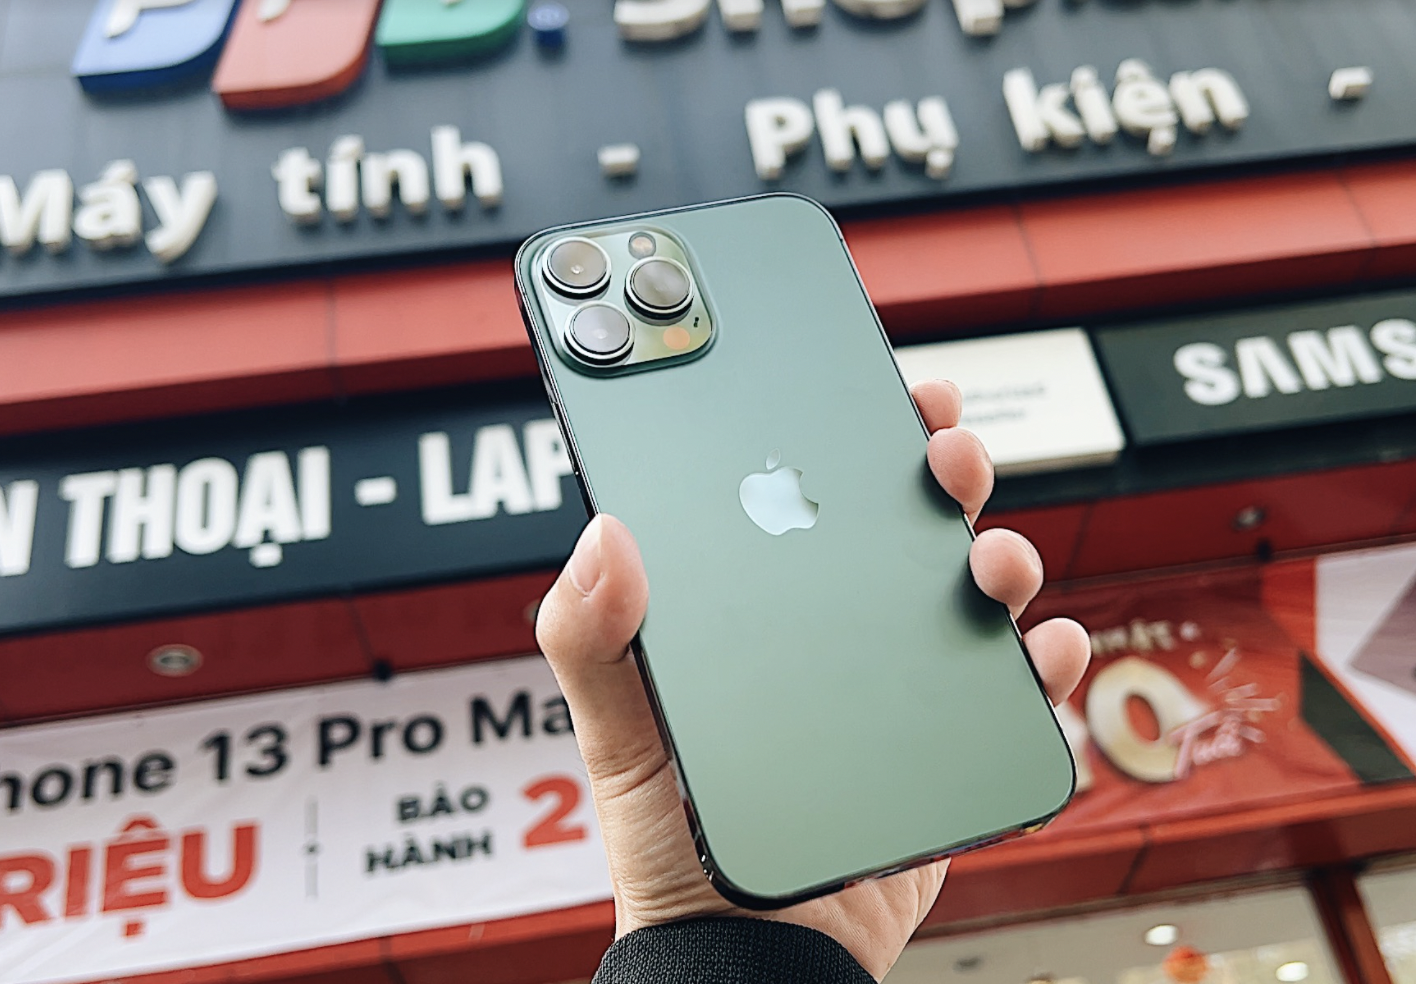 iPhone 13 màu xanh mới bán tại Việt Nam – Khám phá ngay dòng sản phẩm mới nhất của Apple với màu sắc mát mẻ và độc đáo - màu xanh. Trải nghiệm cảm giác sử dụng chuẩn mực với những tính năng đáng kinh ngạc của iPhone 13 và màu sắc đặc biệt này.